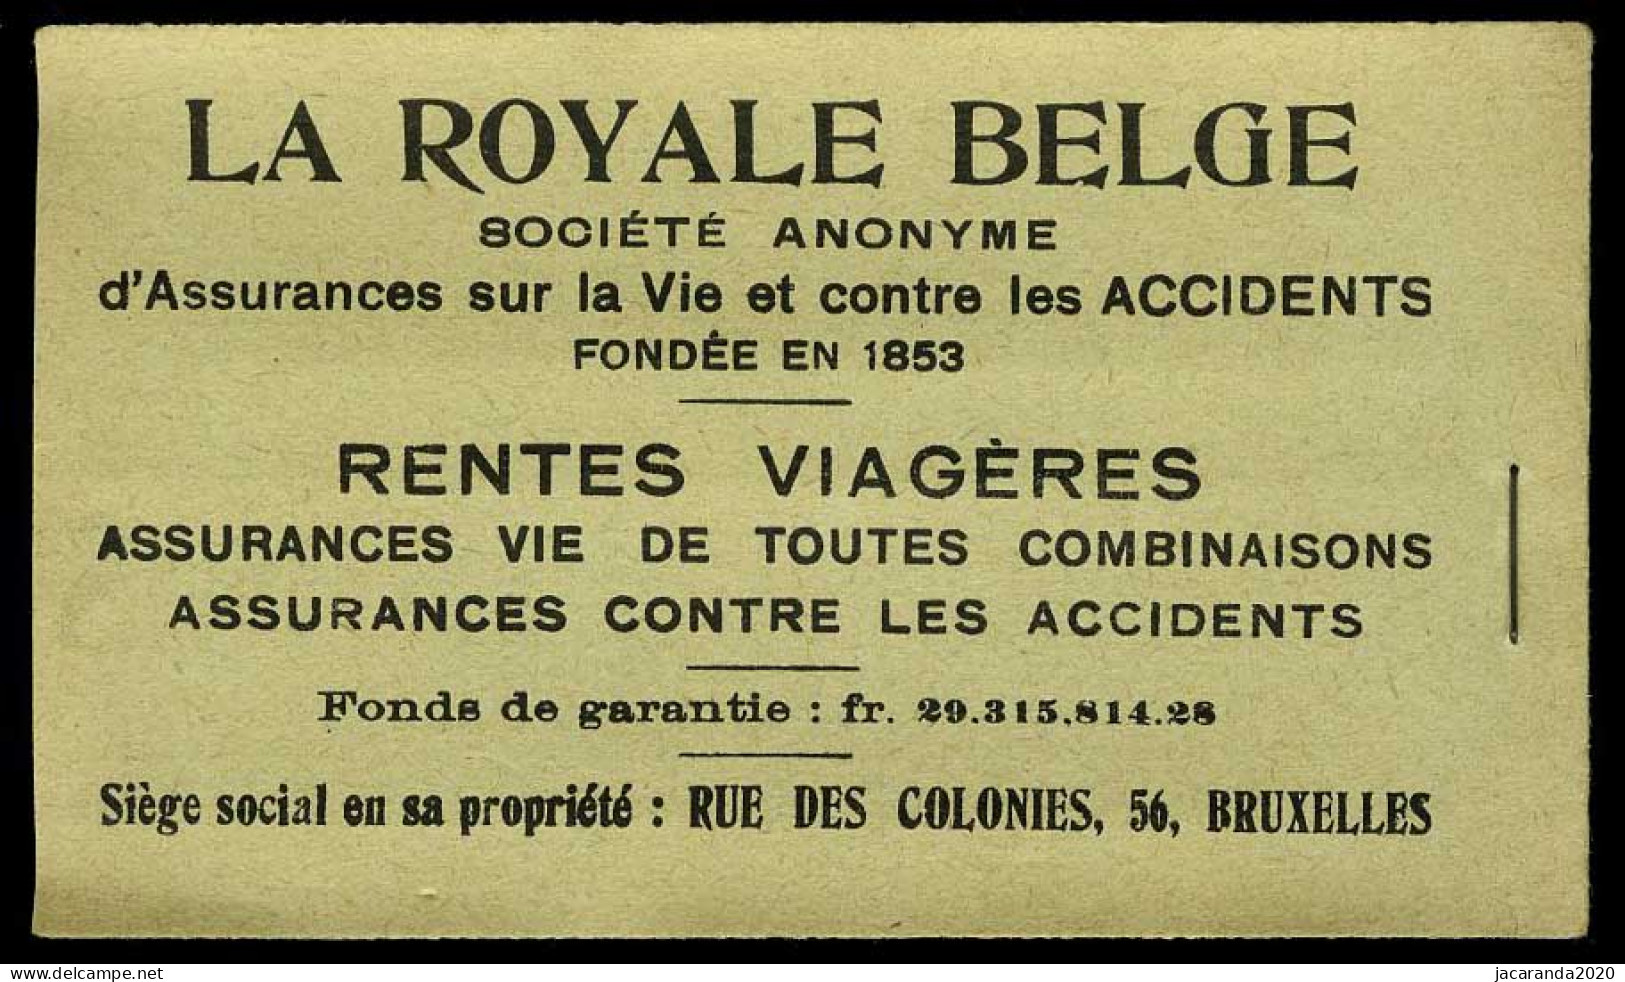 België Boekje A13d(b) - Volledig - Groen Kaftje - 50 Zegels - Doorschijnende Schutblaadjes - 1914  - Zeer Mooi - SUP - 1907-1941 Oude [A]